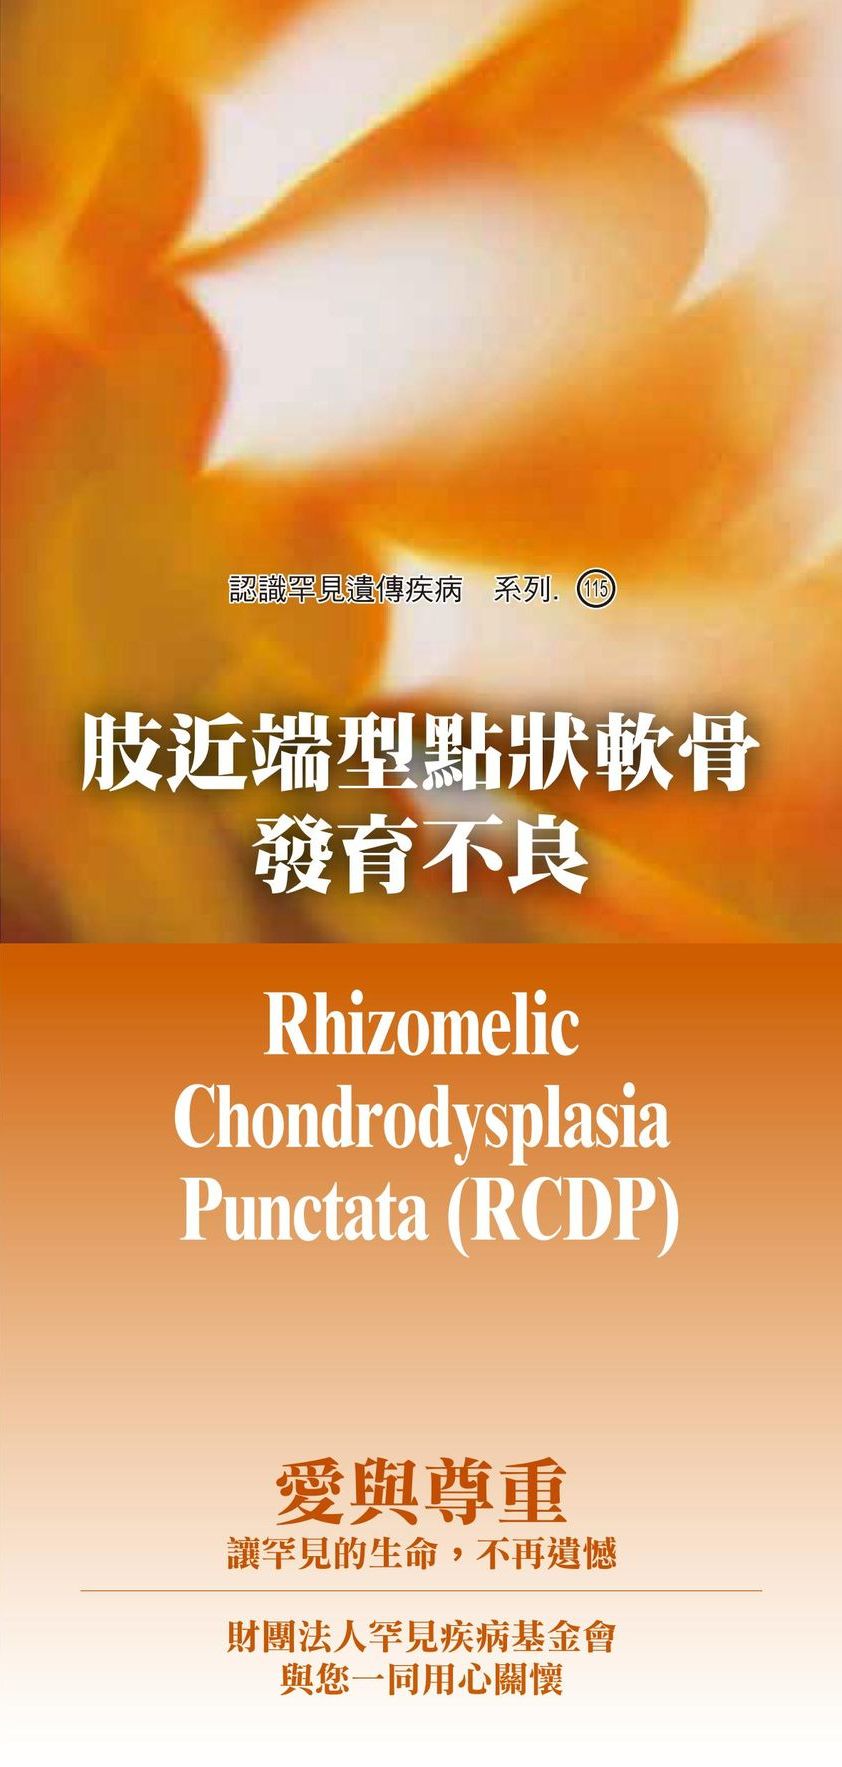 肢近端型點狀軟骨發育不良  ( Rhizomelic Chondrodysplasia Punctata )文章照片